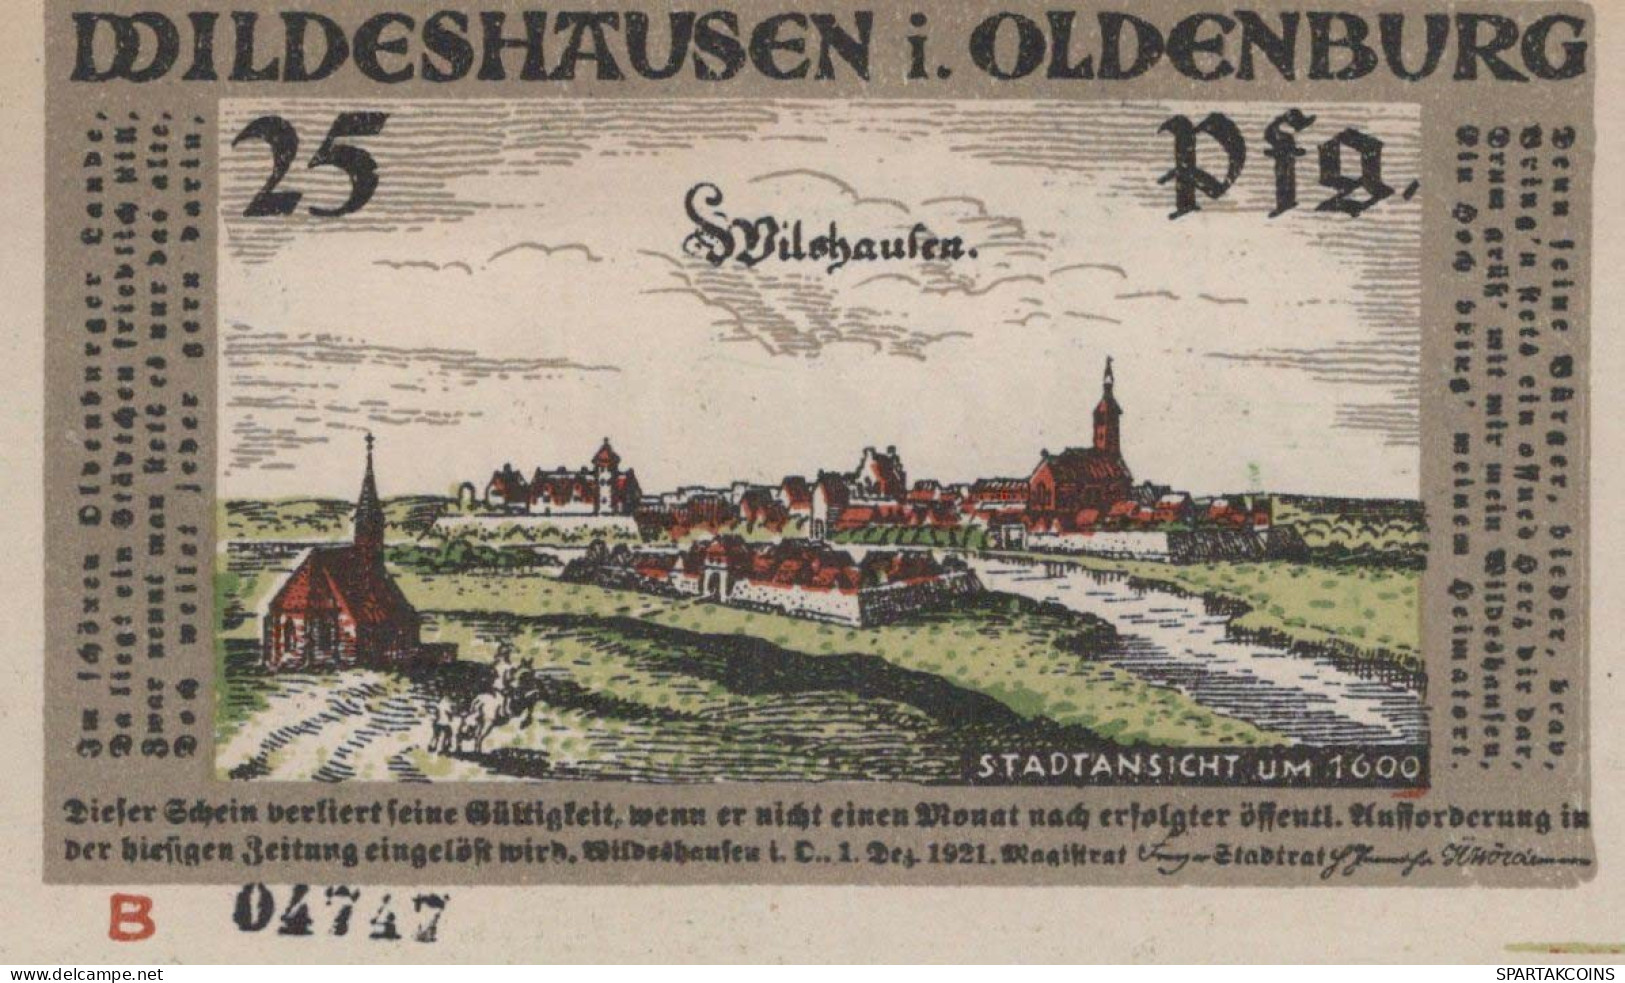 25 PFENNIG 1921 Stadt WILDESHAUSEN Oldenburg UNC DEUTSCHLAND Notgeld #PJ028 - [11] Emissions Locales